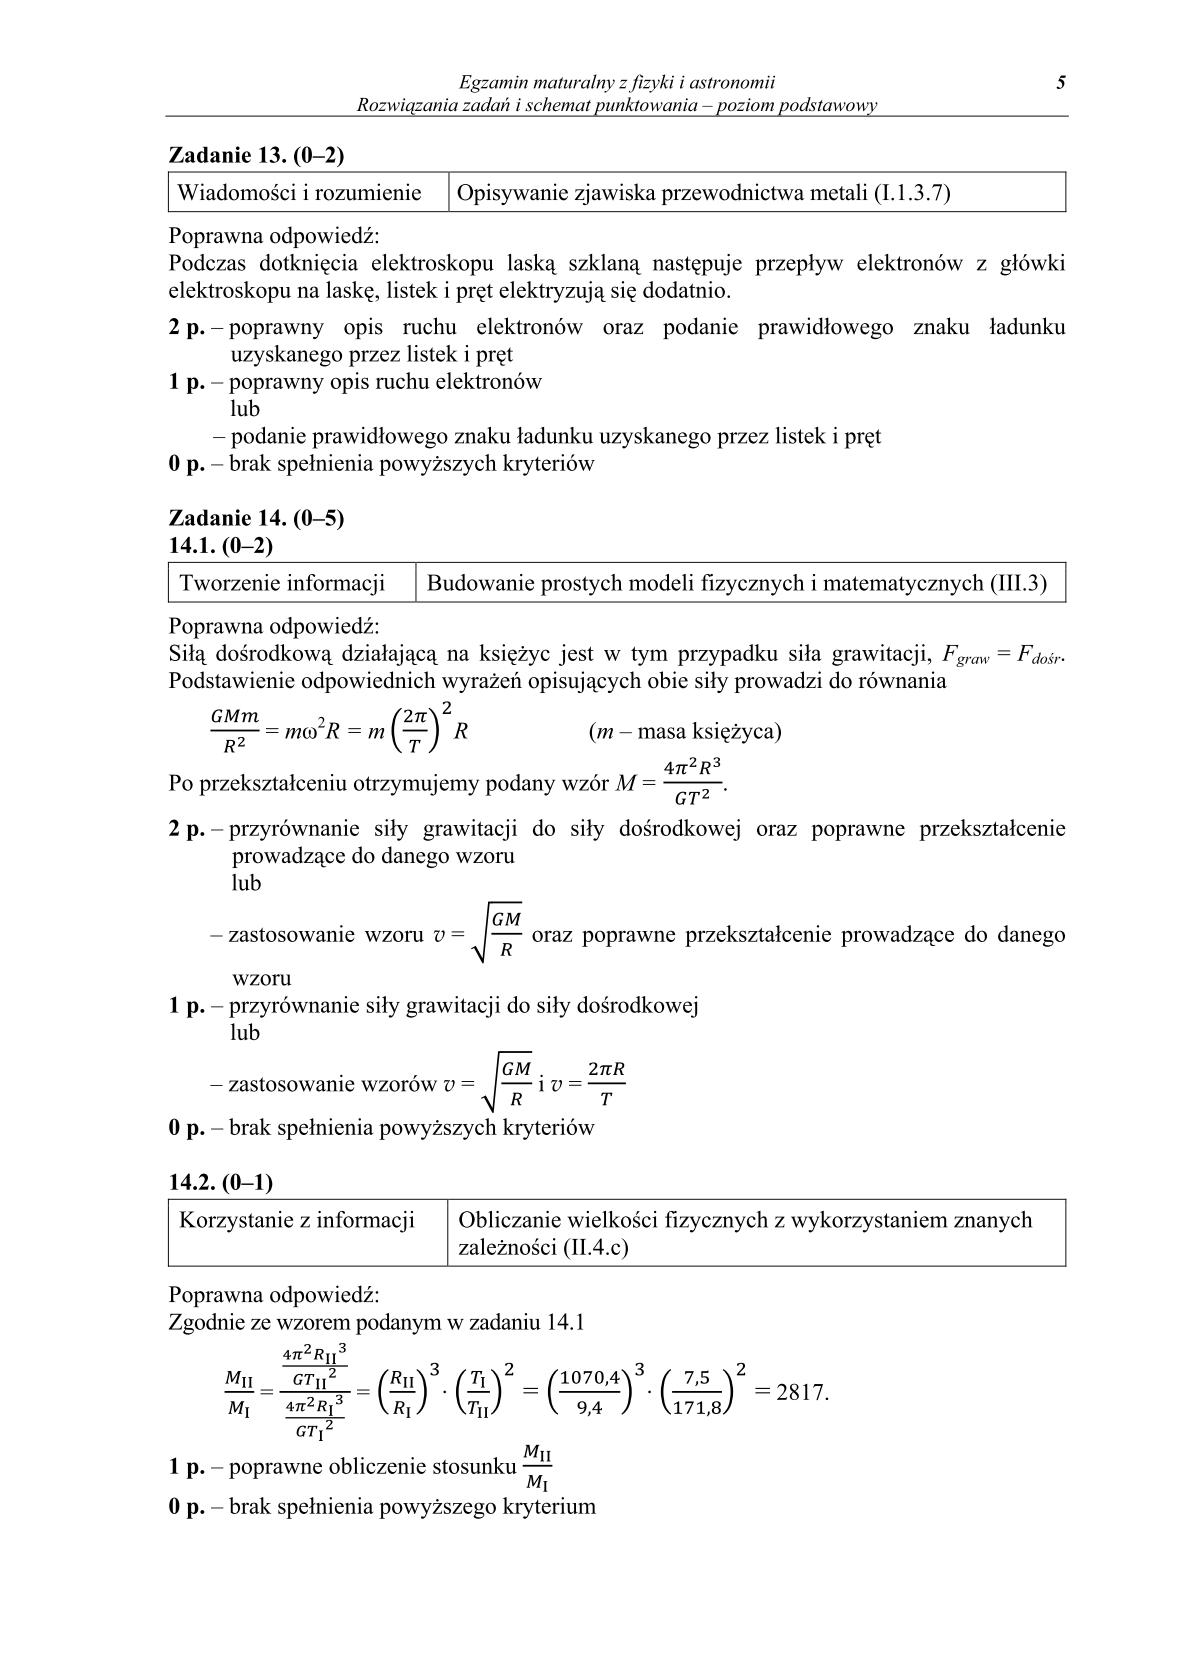 odpowiedzi-fizyka-i-astronomia-poziom-podstawowy-matura-2014-str.5